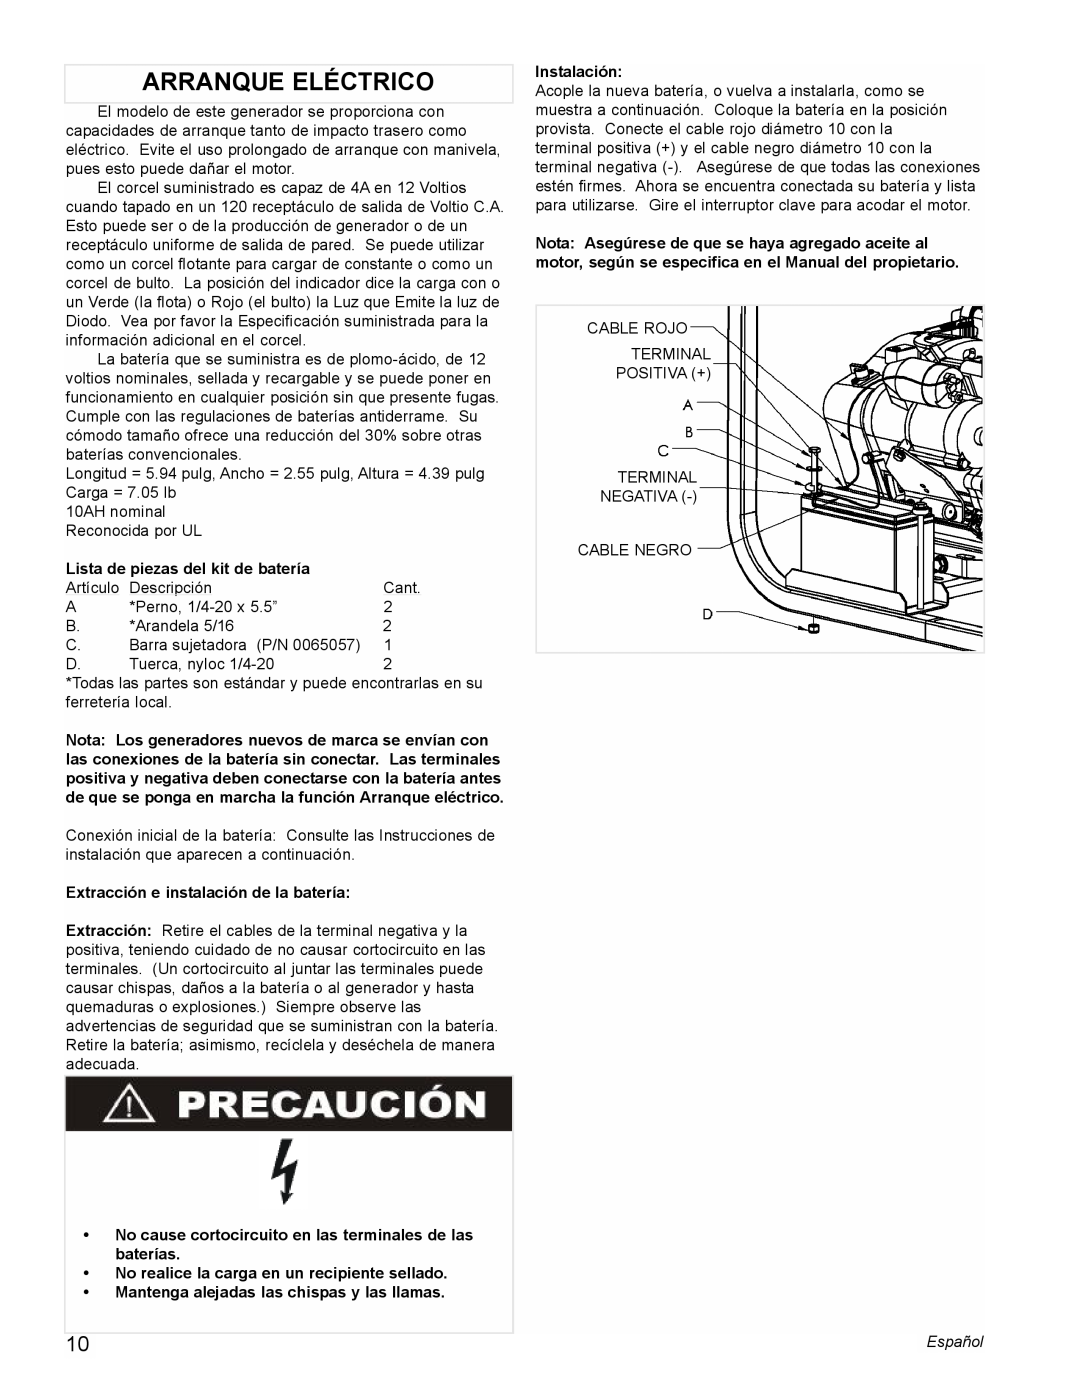 Powermate PM0435004 manual Arranque Eléctrico, Lista de piezas del kit de batería, Extracción e instalación de la batería 